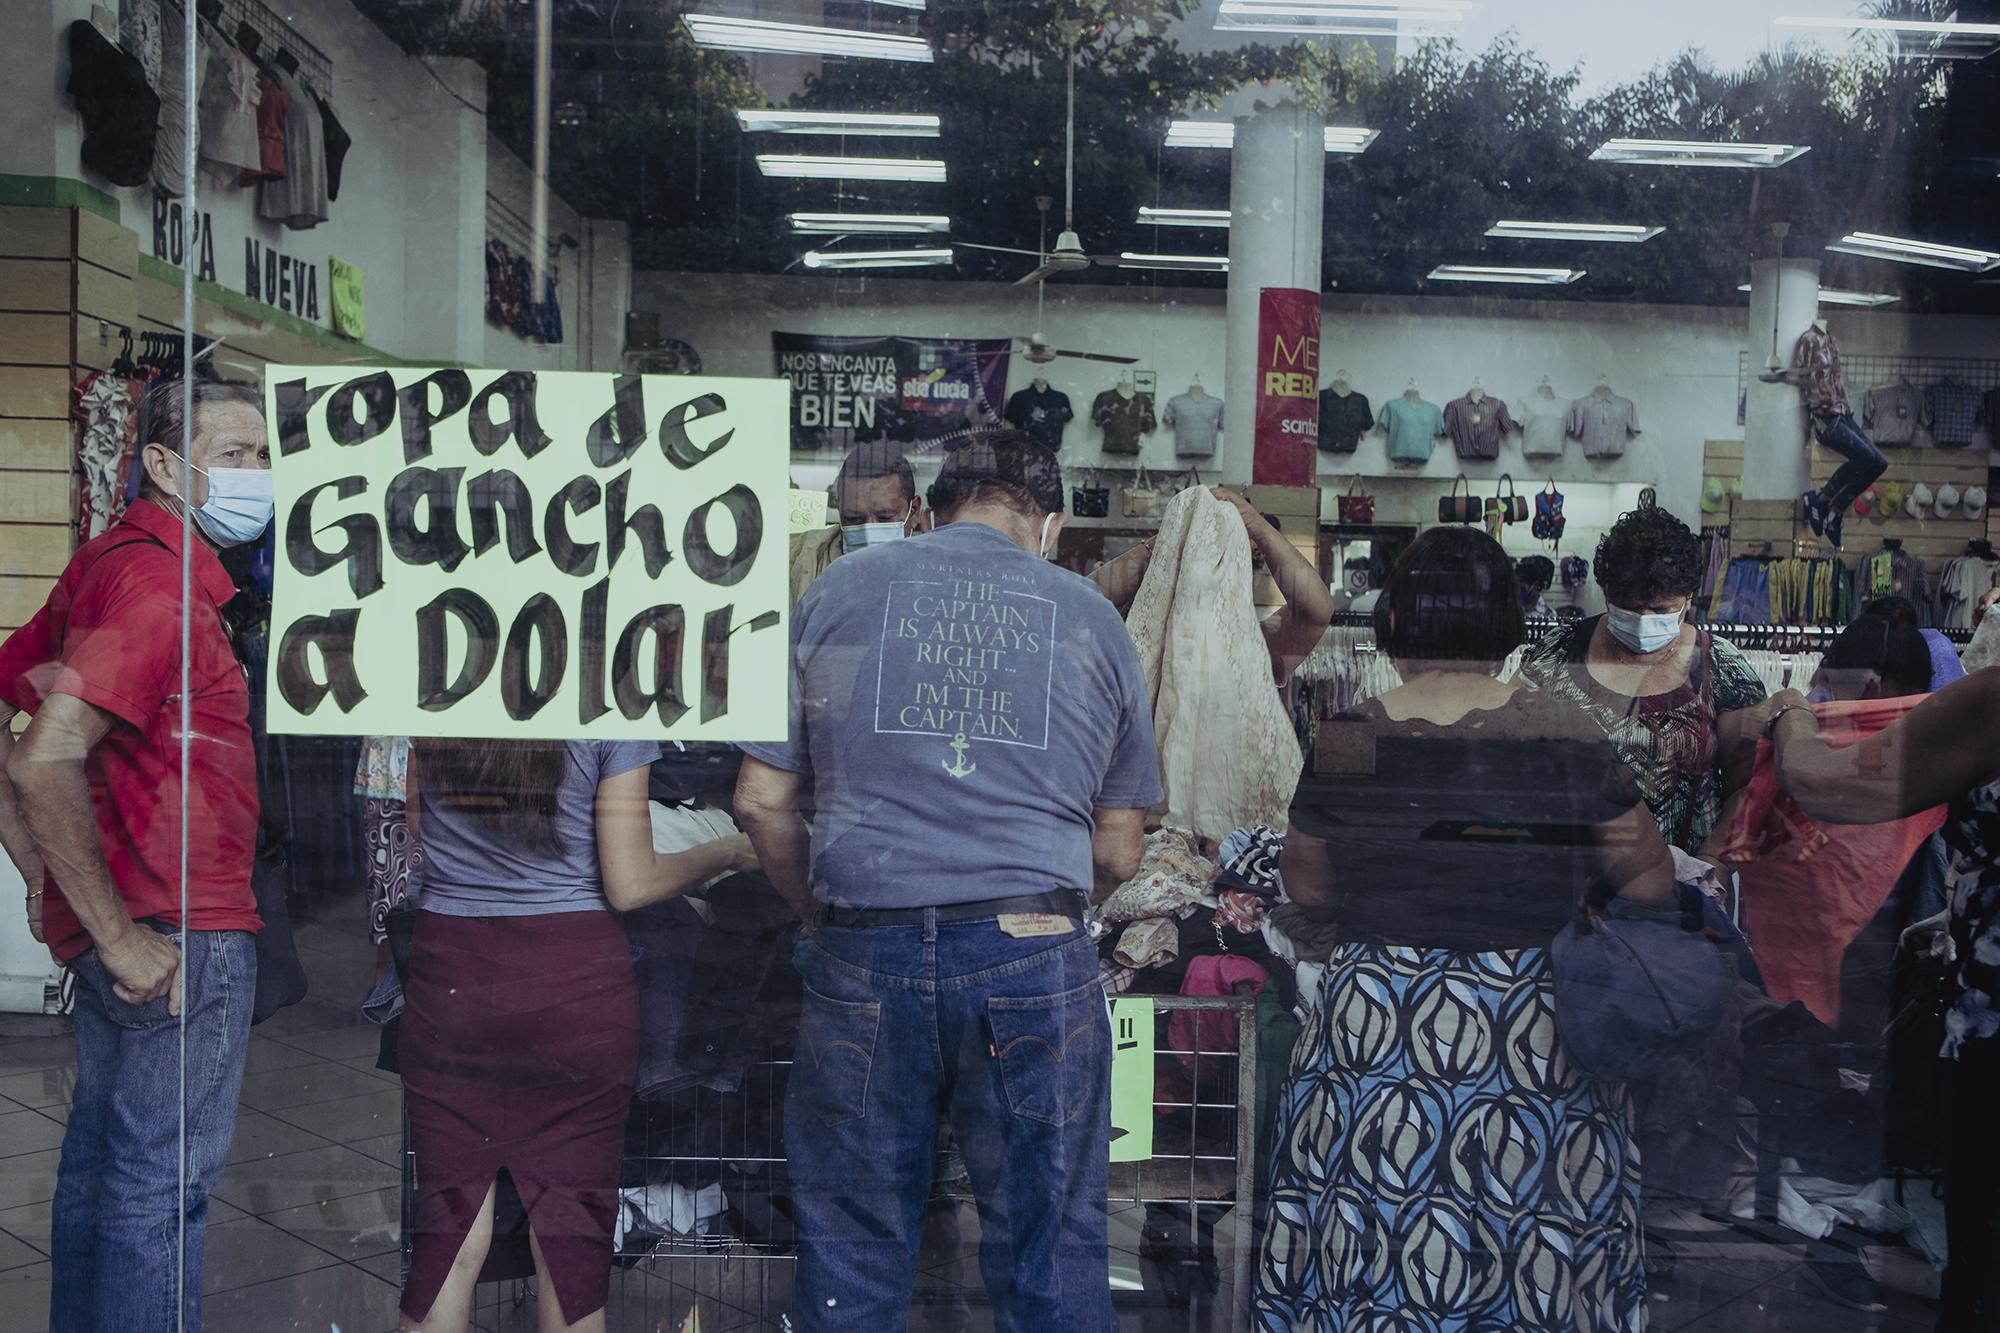 Los negocios de ropa usada son muy comunes en el centro de San Salvador, los días de ofertas los locales se abarrotan de personas que pasan durante minutos juntos y revolviendo la ropa, el local no ofrece ninguna medida de seguridad para la prevención de la COVID-19.